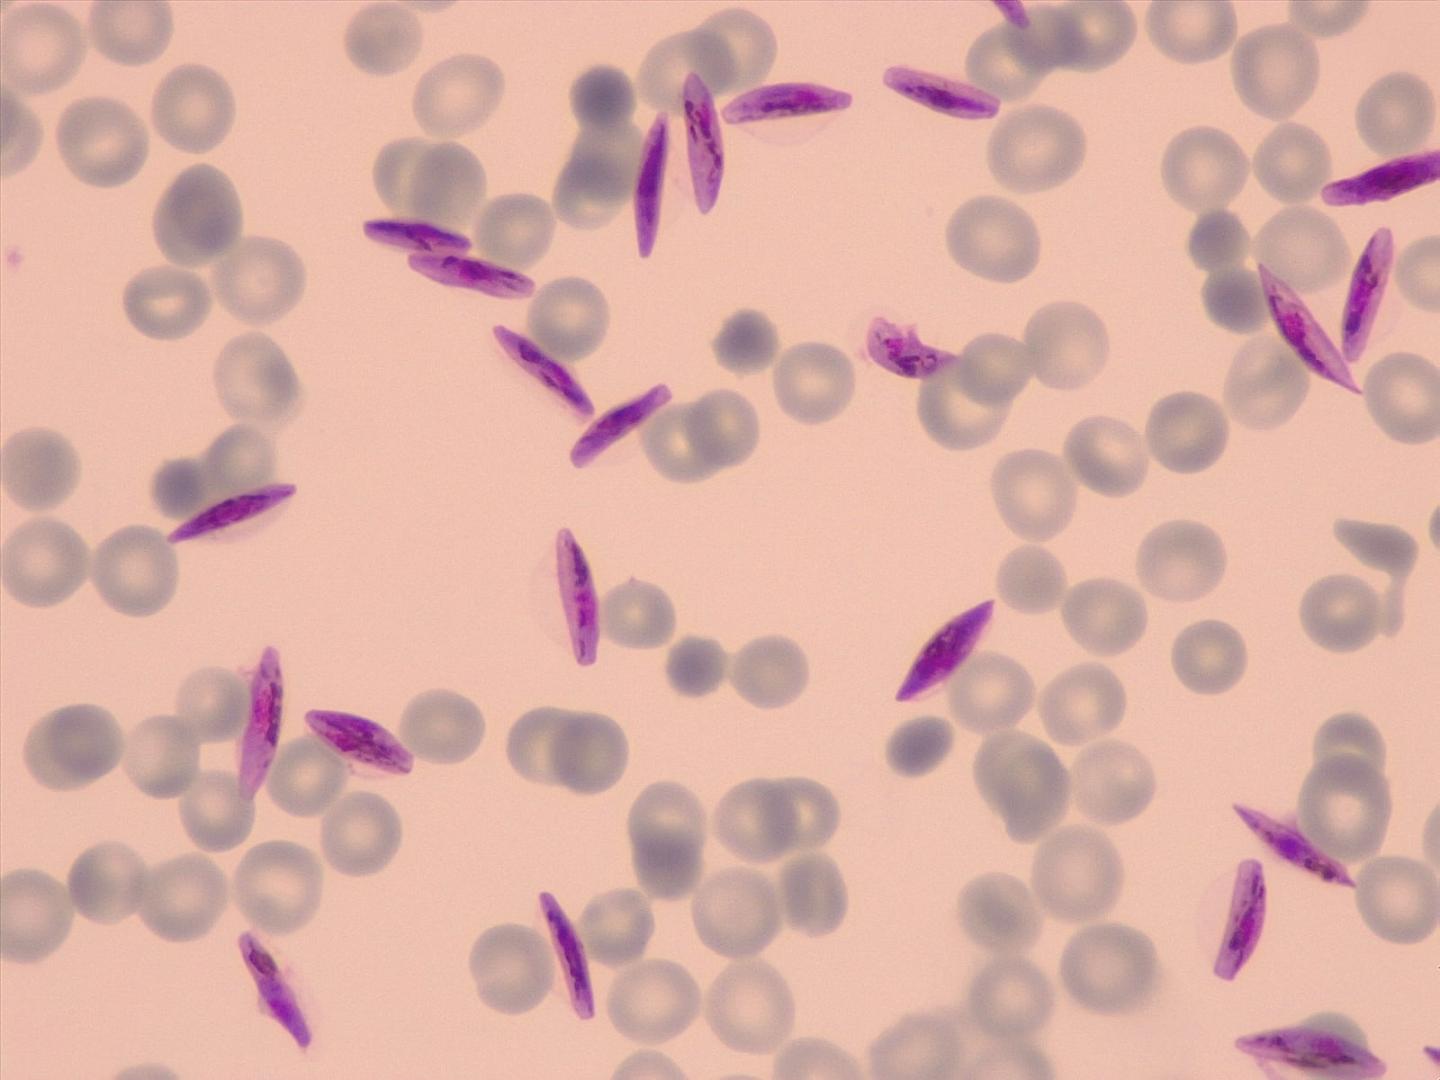 Gametocytes